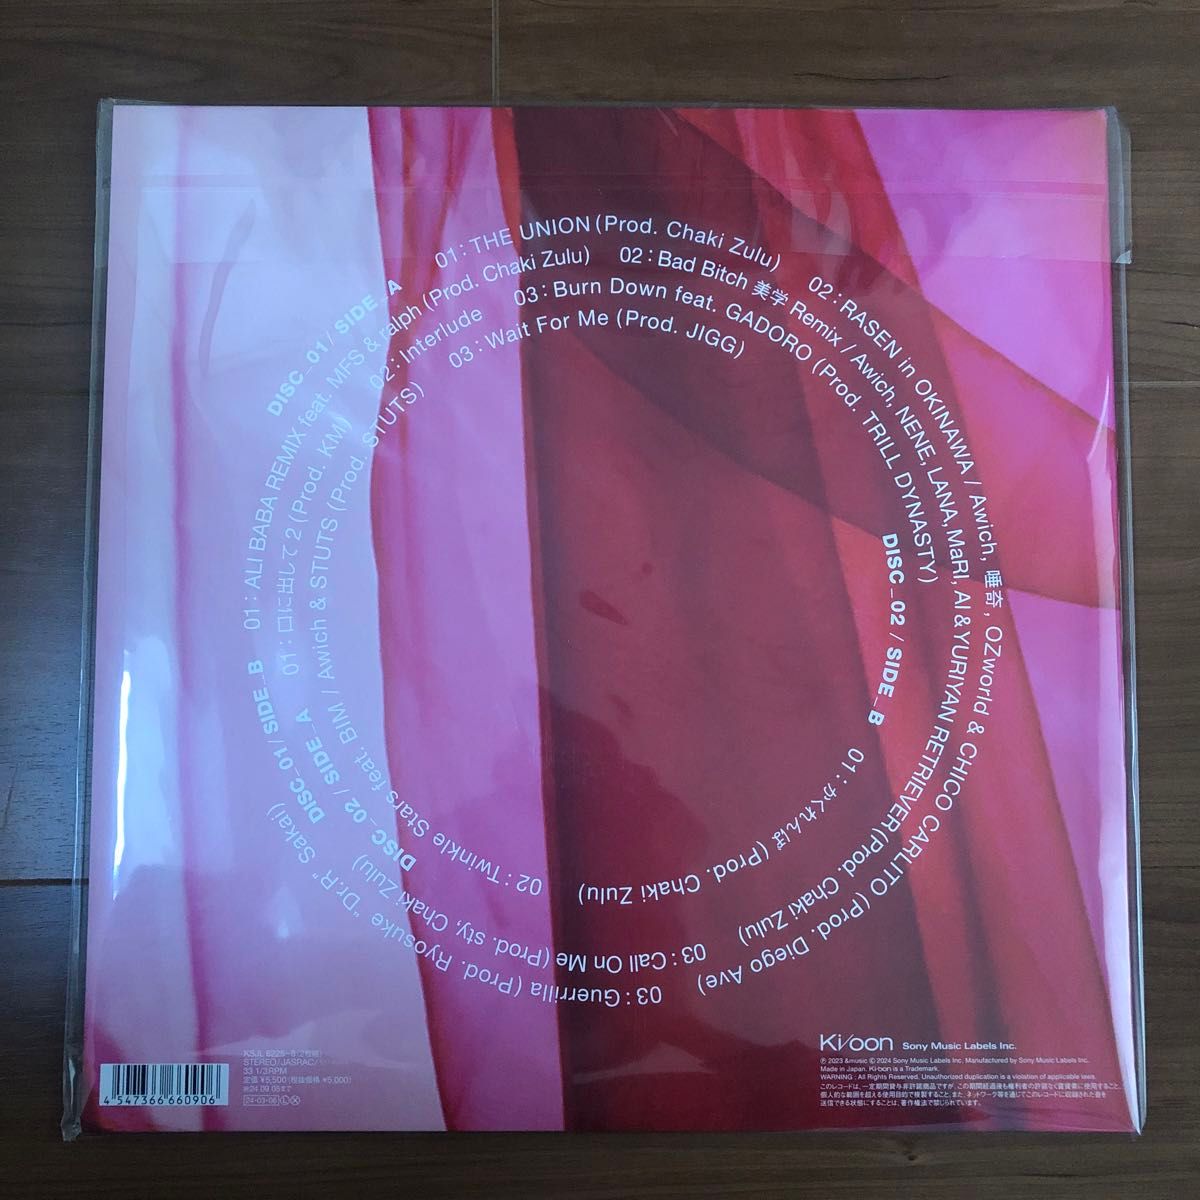 THE UNION カラーヴァイナル仕様 2枚組アナログレコード LP Awich 完全生産限定盤 購入者特典 B2ポスター付き